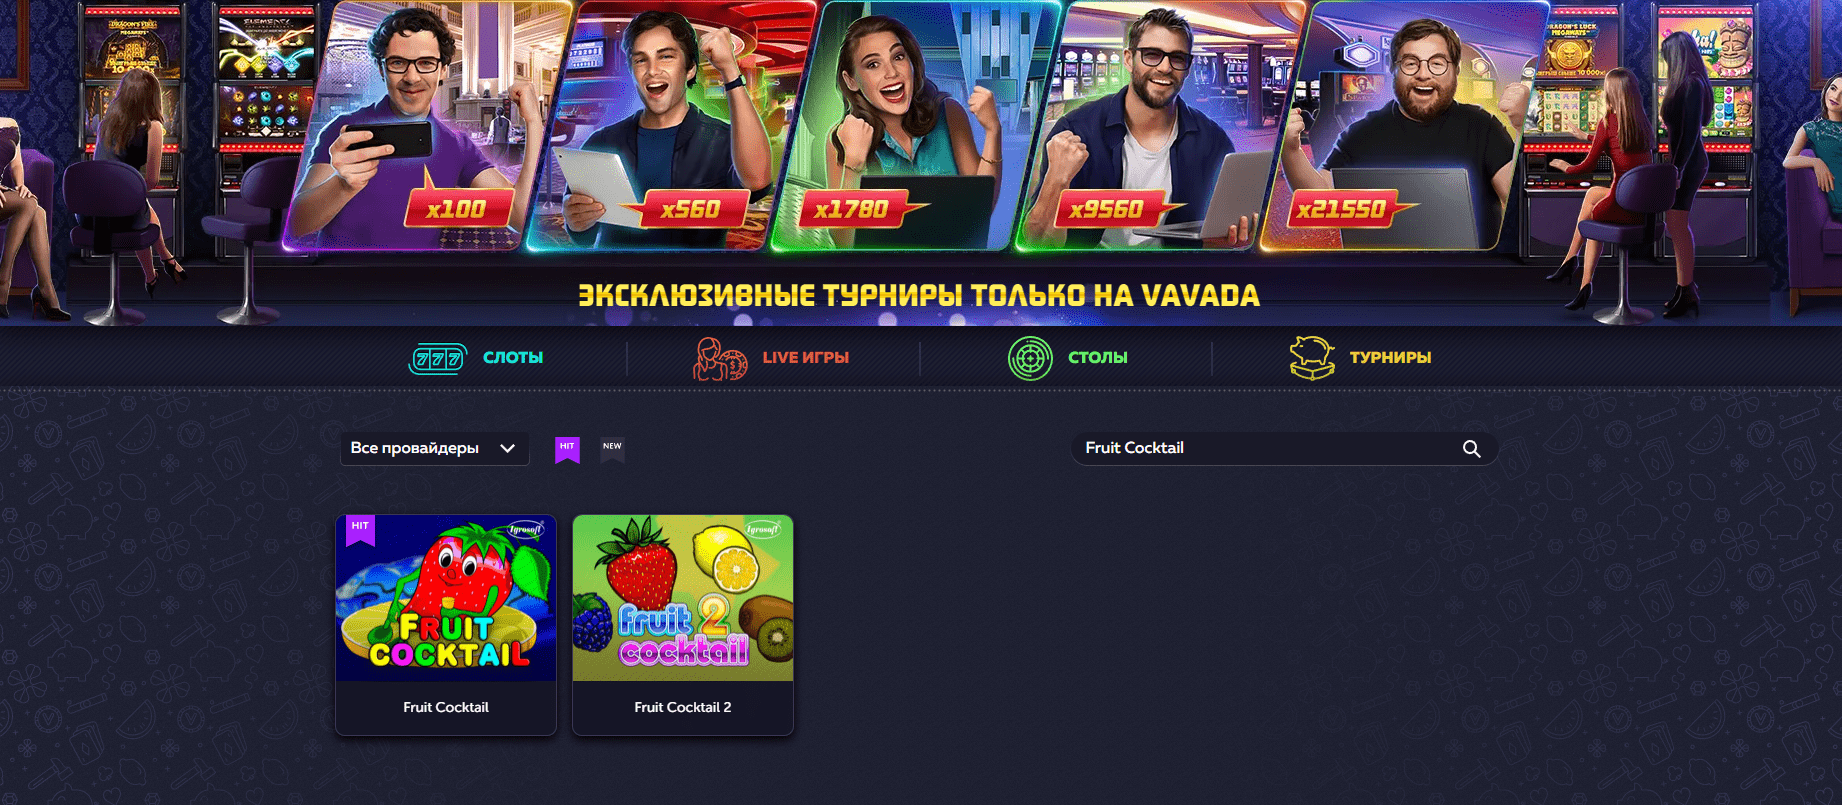 official Vavada Casino website